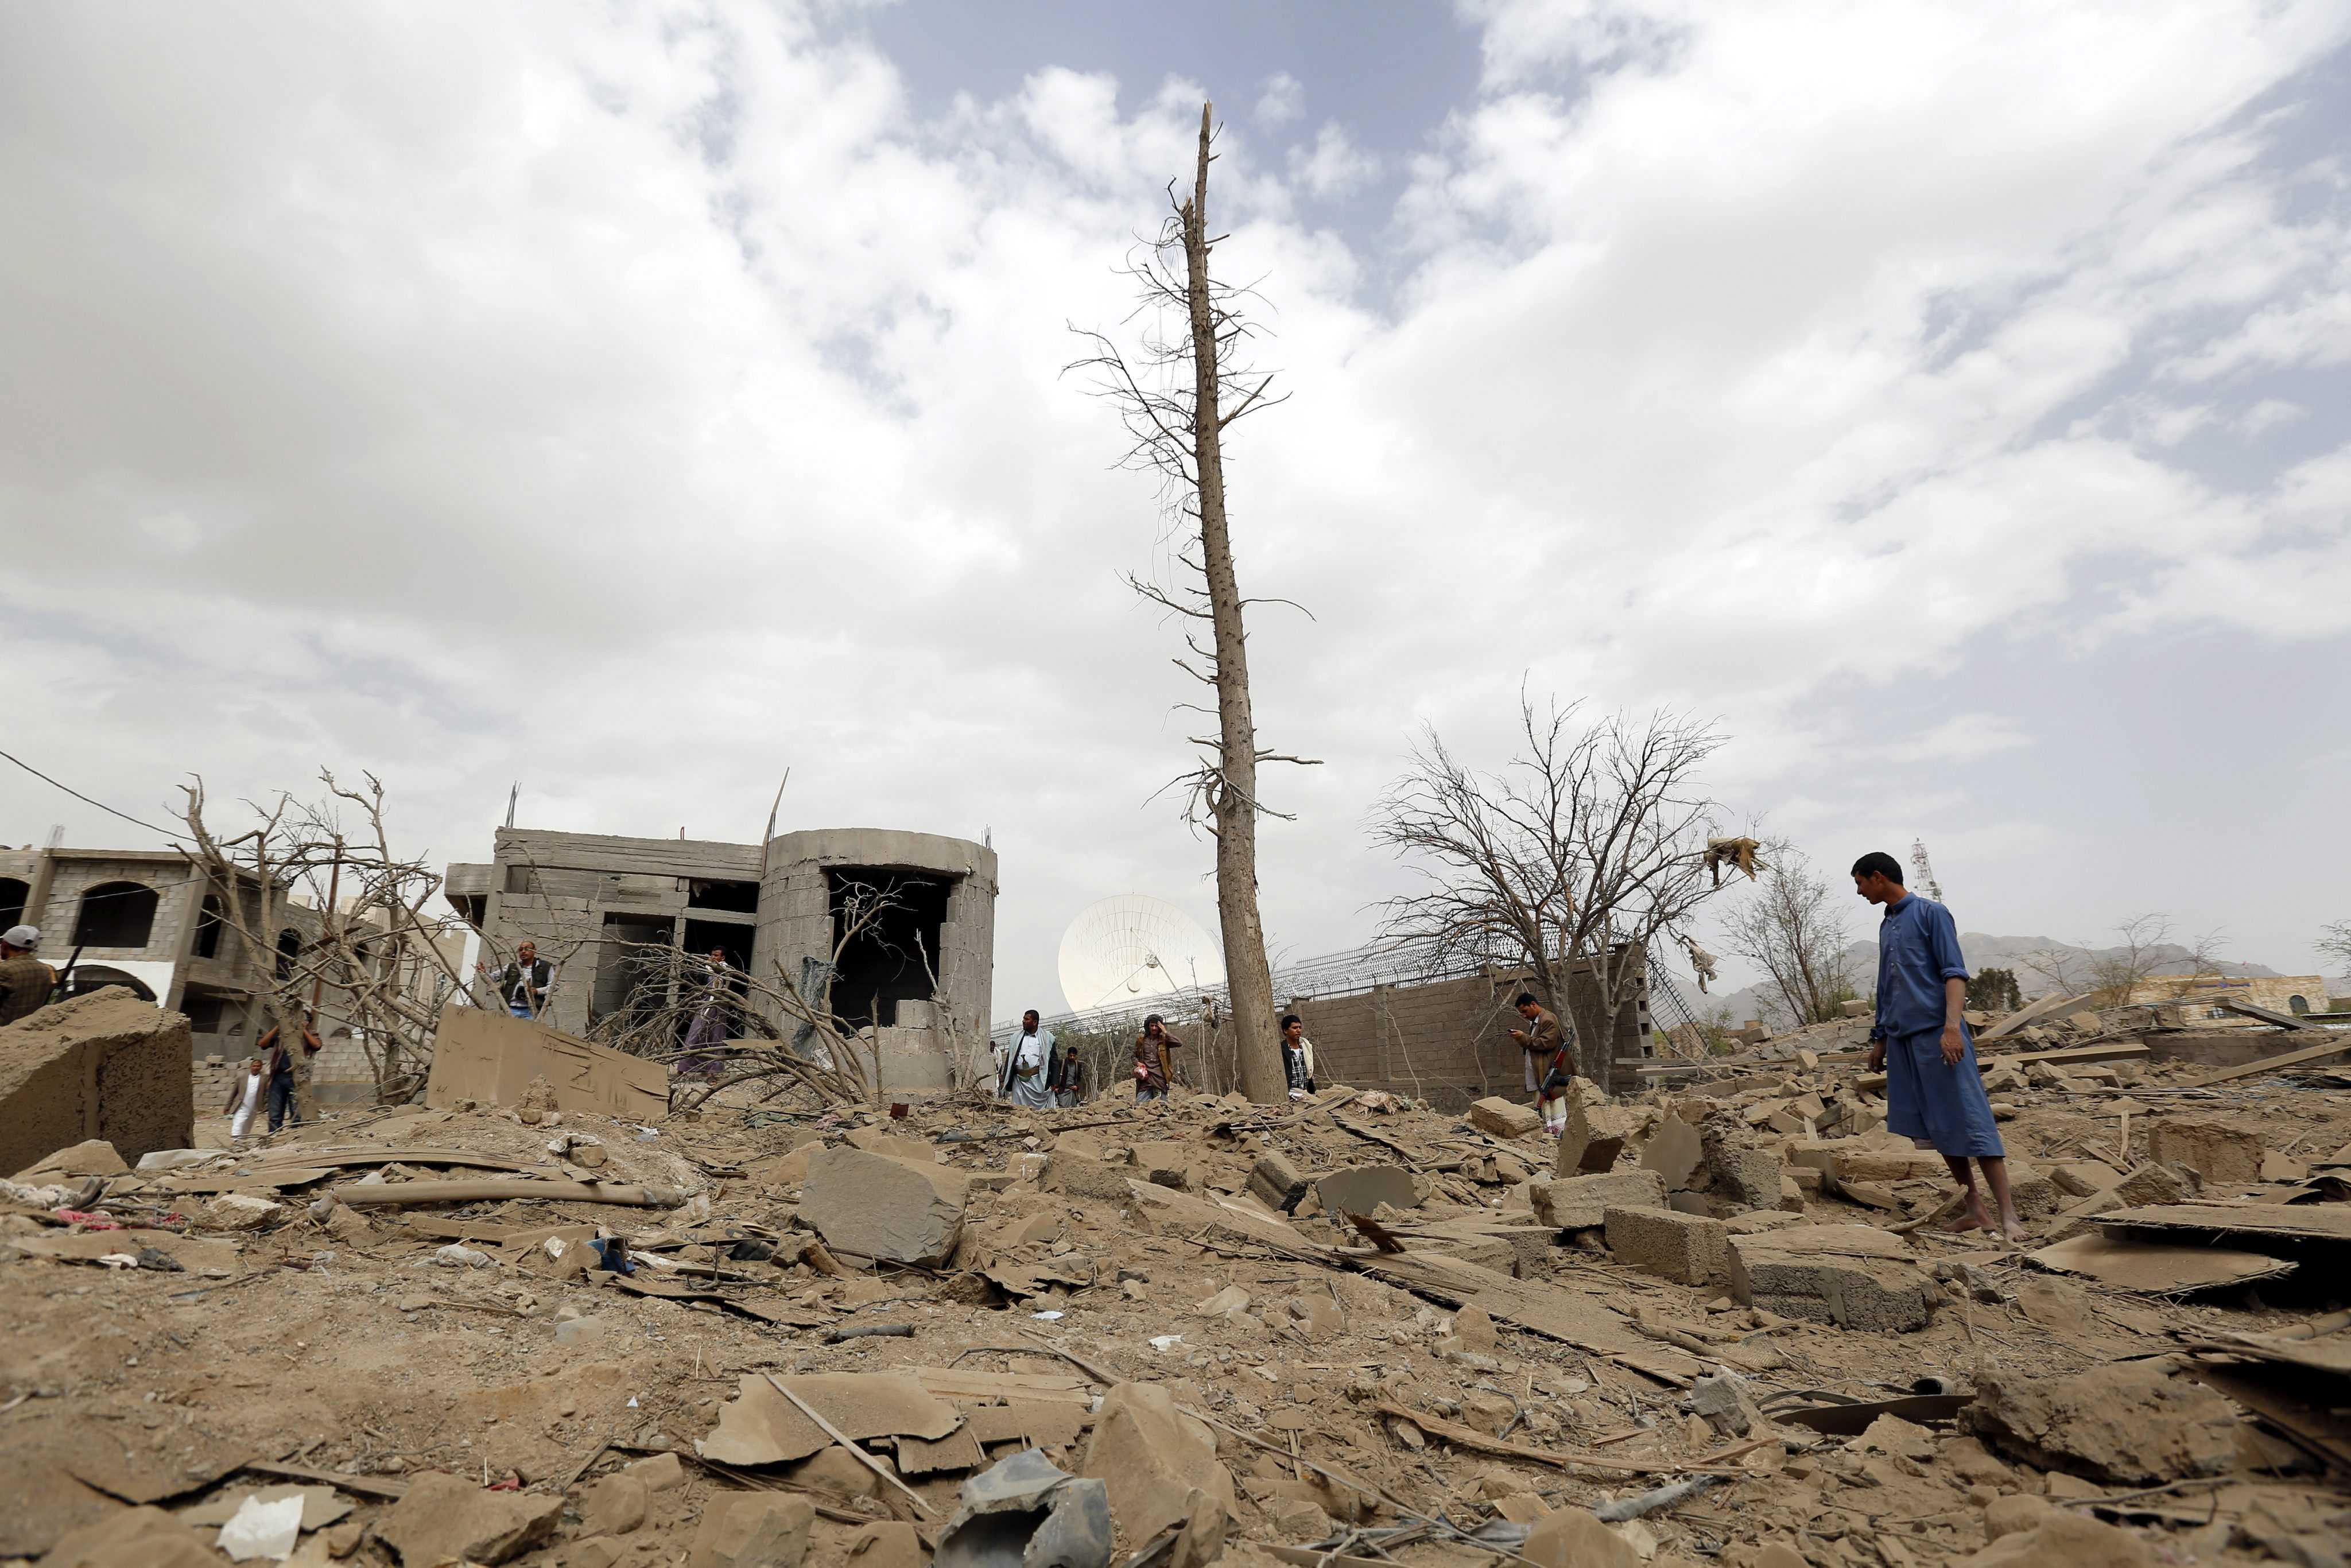 Yemen enfrenta una operación militar injerencista de una coalición encabezada por Arabia Saudita